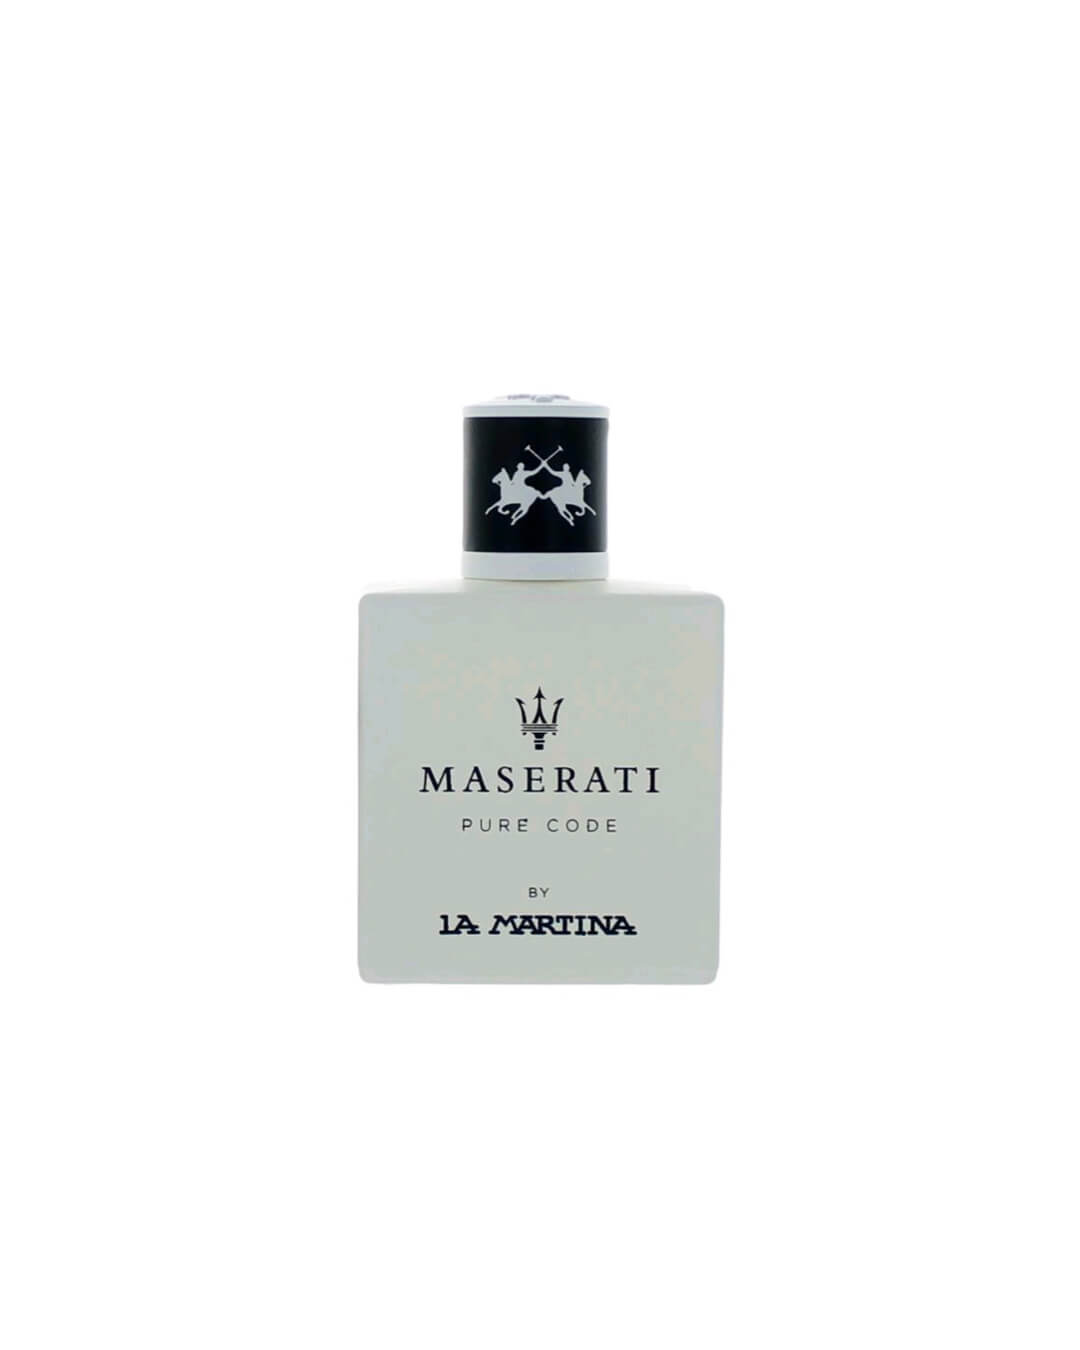 Maserati - La Martina